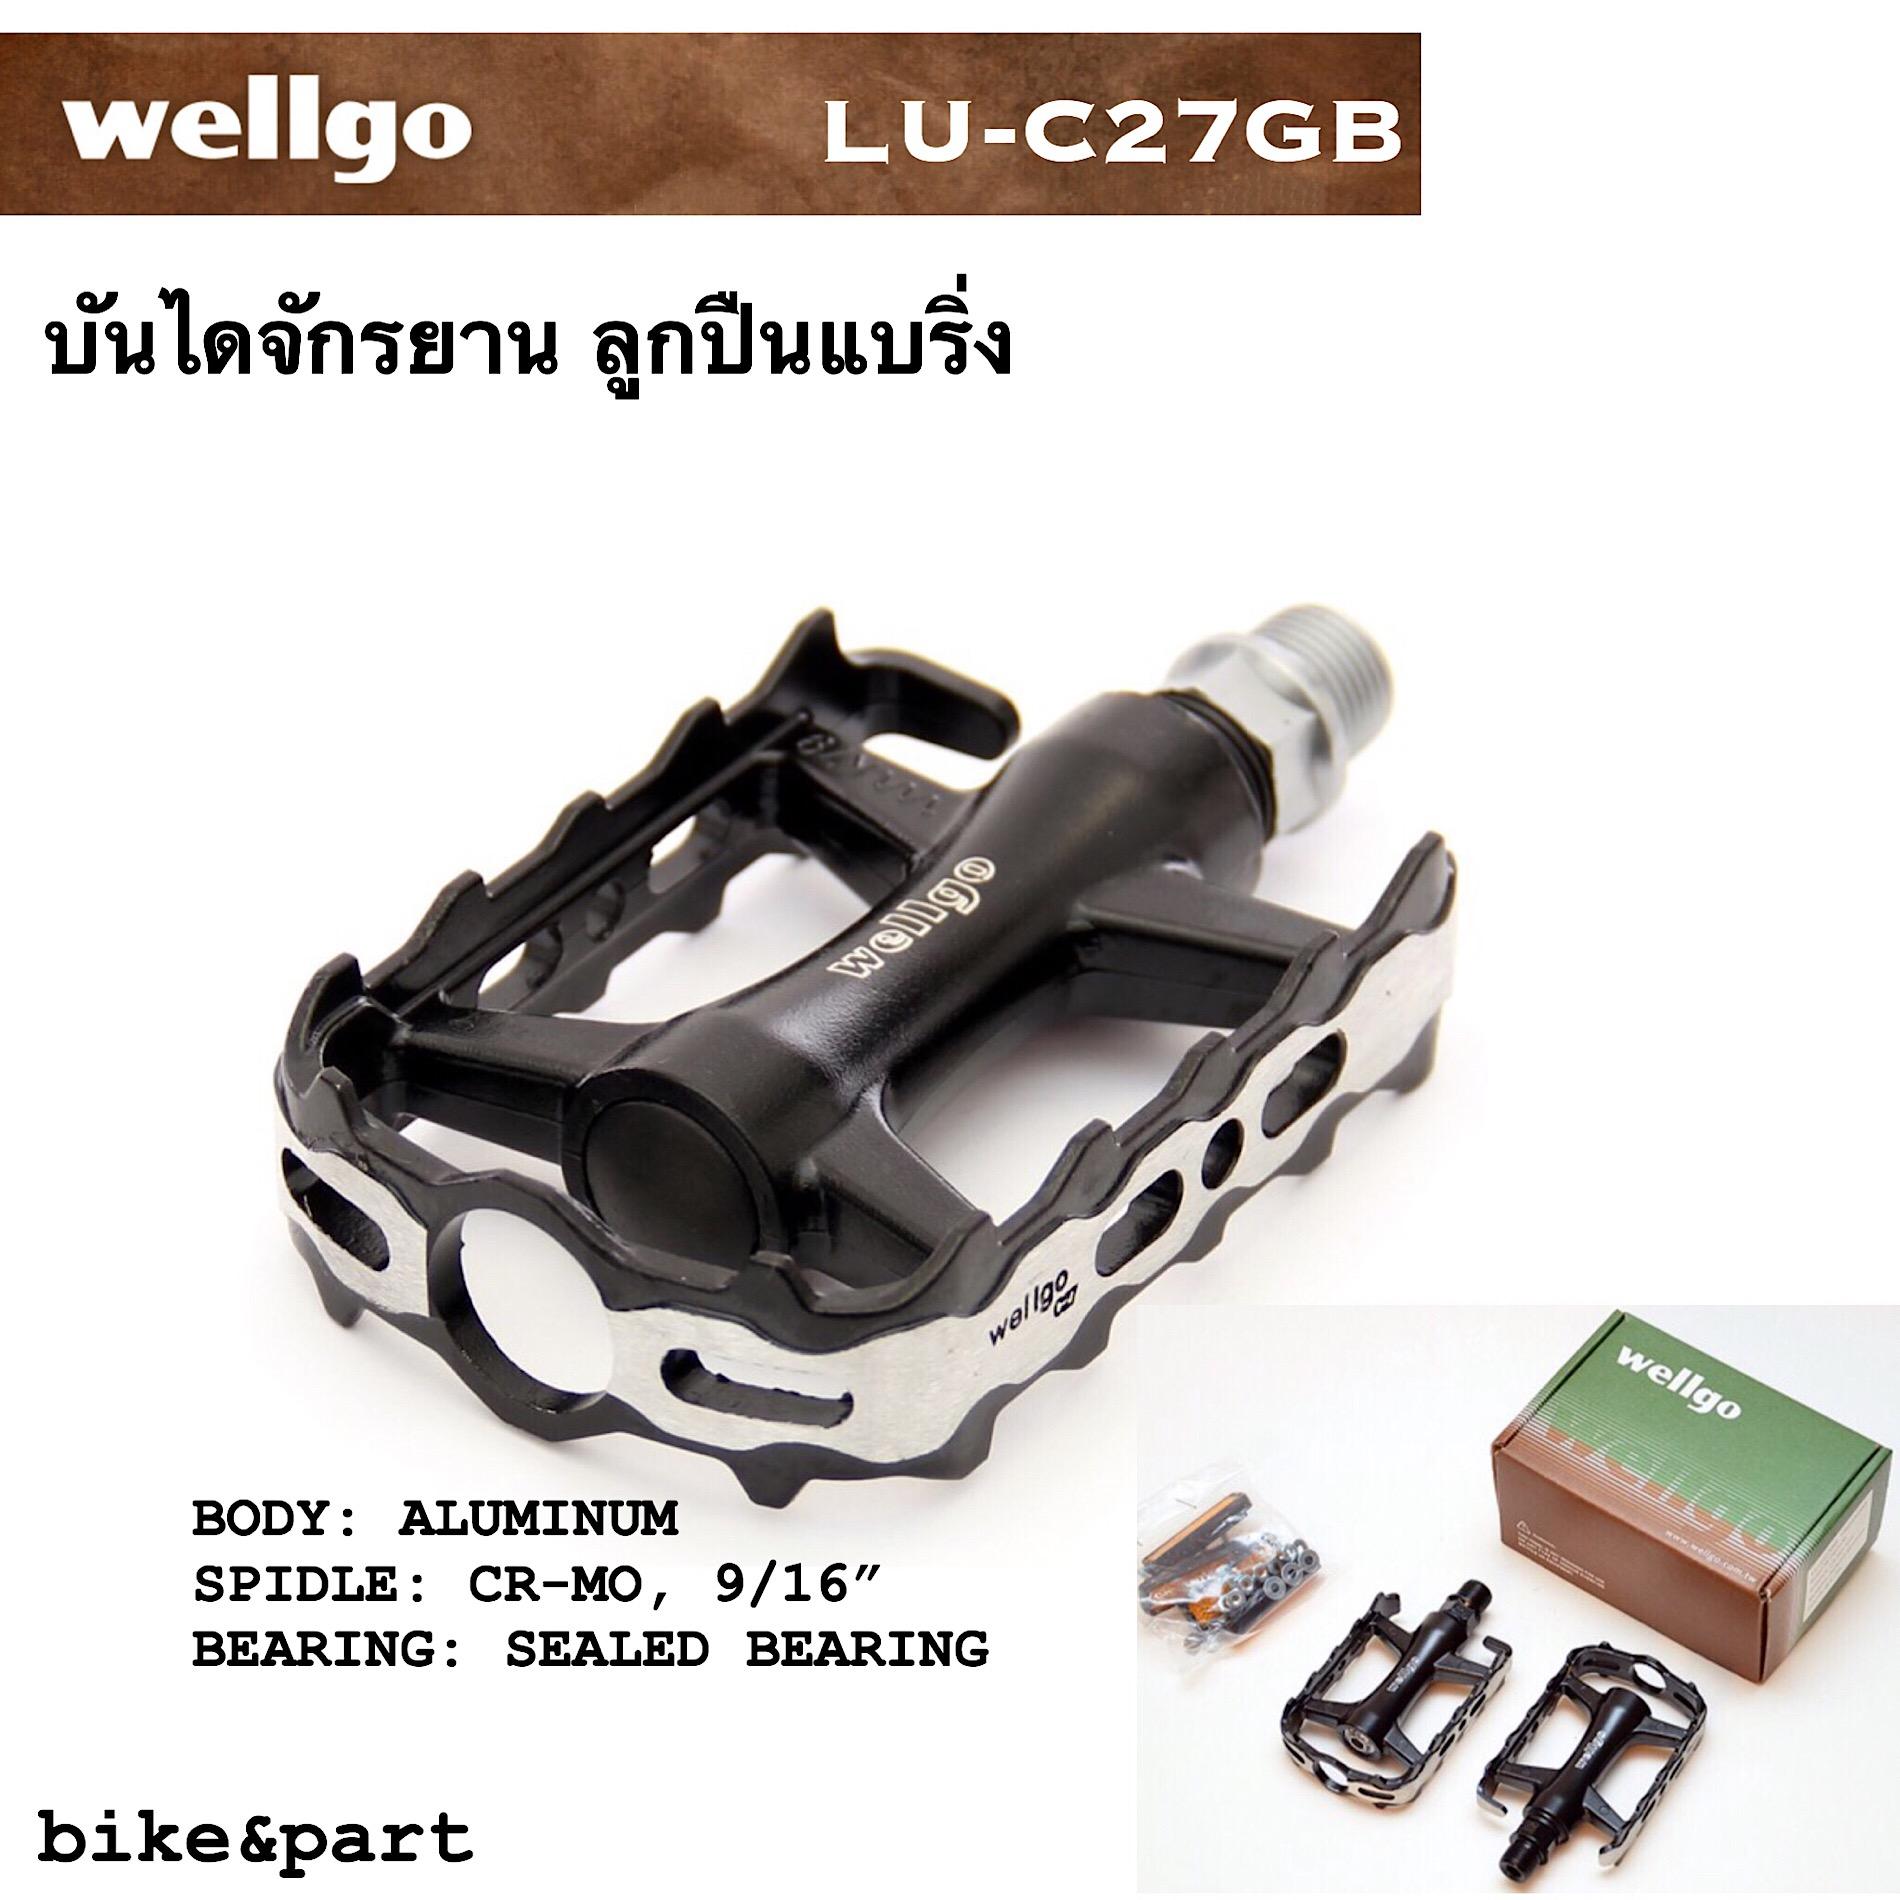 บันไดจักรยาน wellgo LU-C27GB